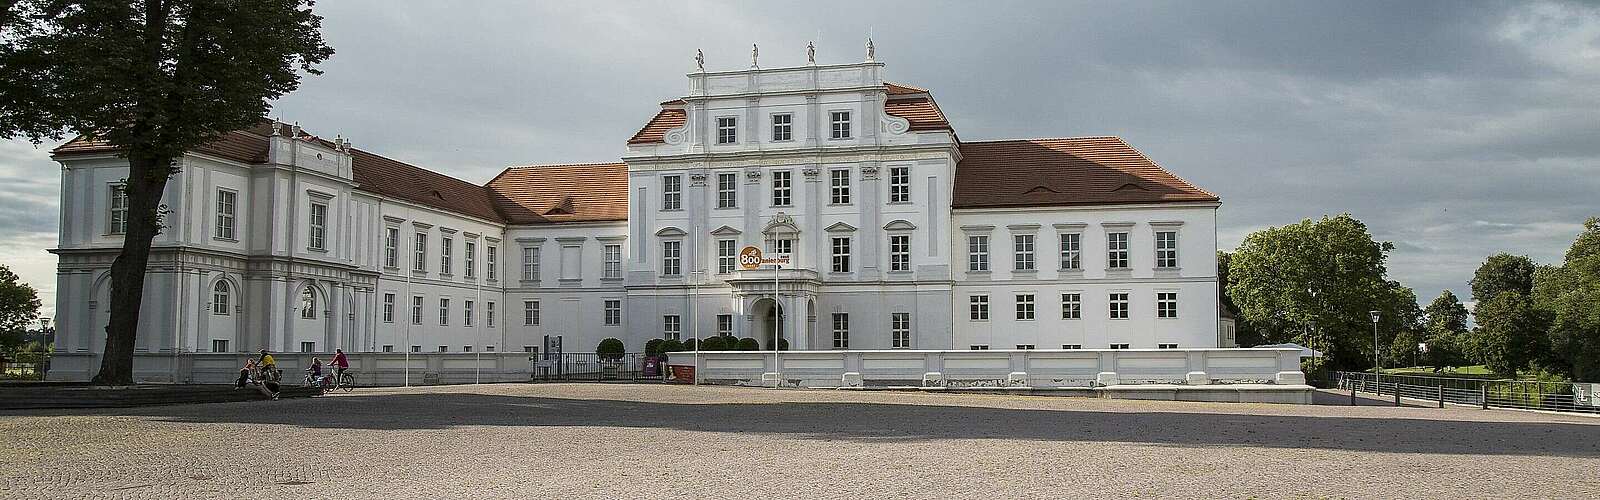 Schloss Oranienburg,
        
    

        Foto: Fotograf / Lizenz - Media Import/Steffen Lehmann